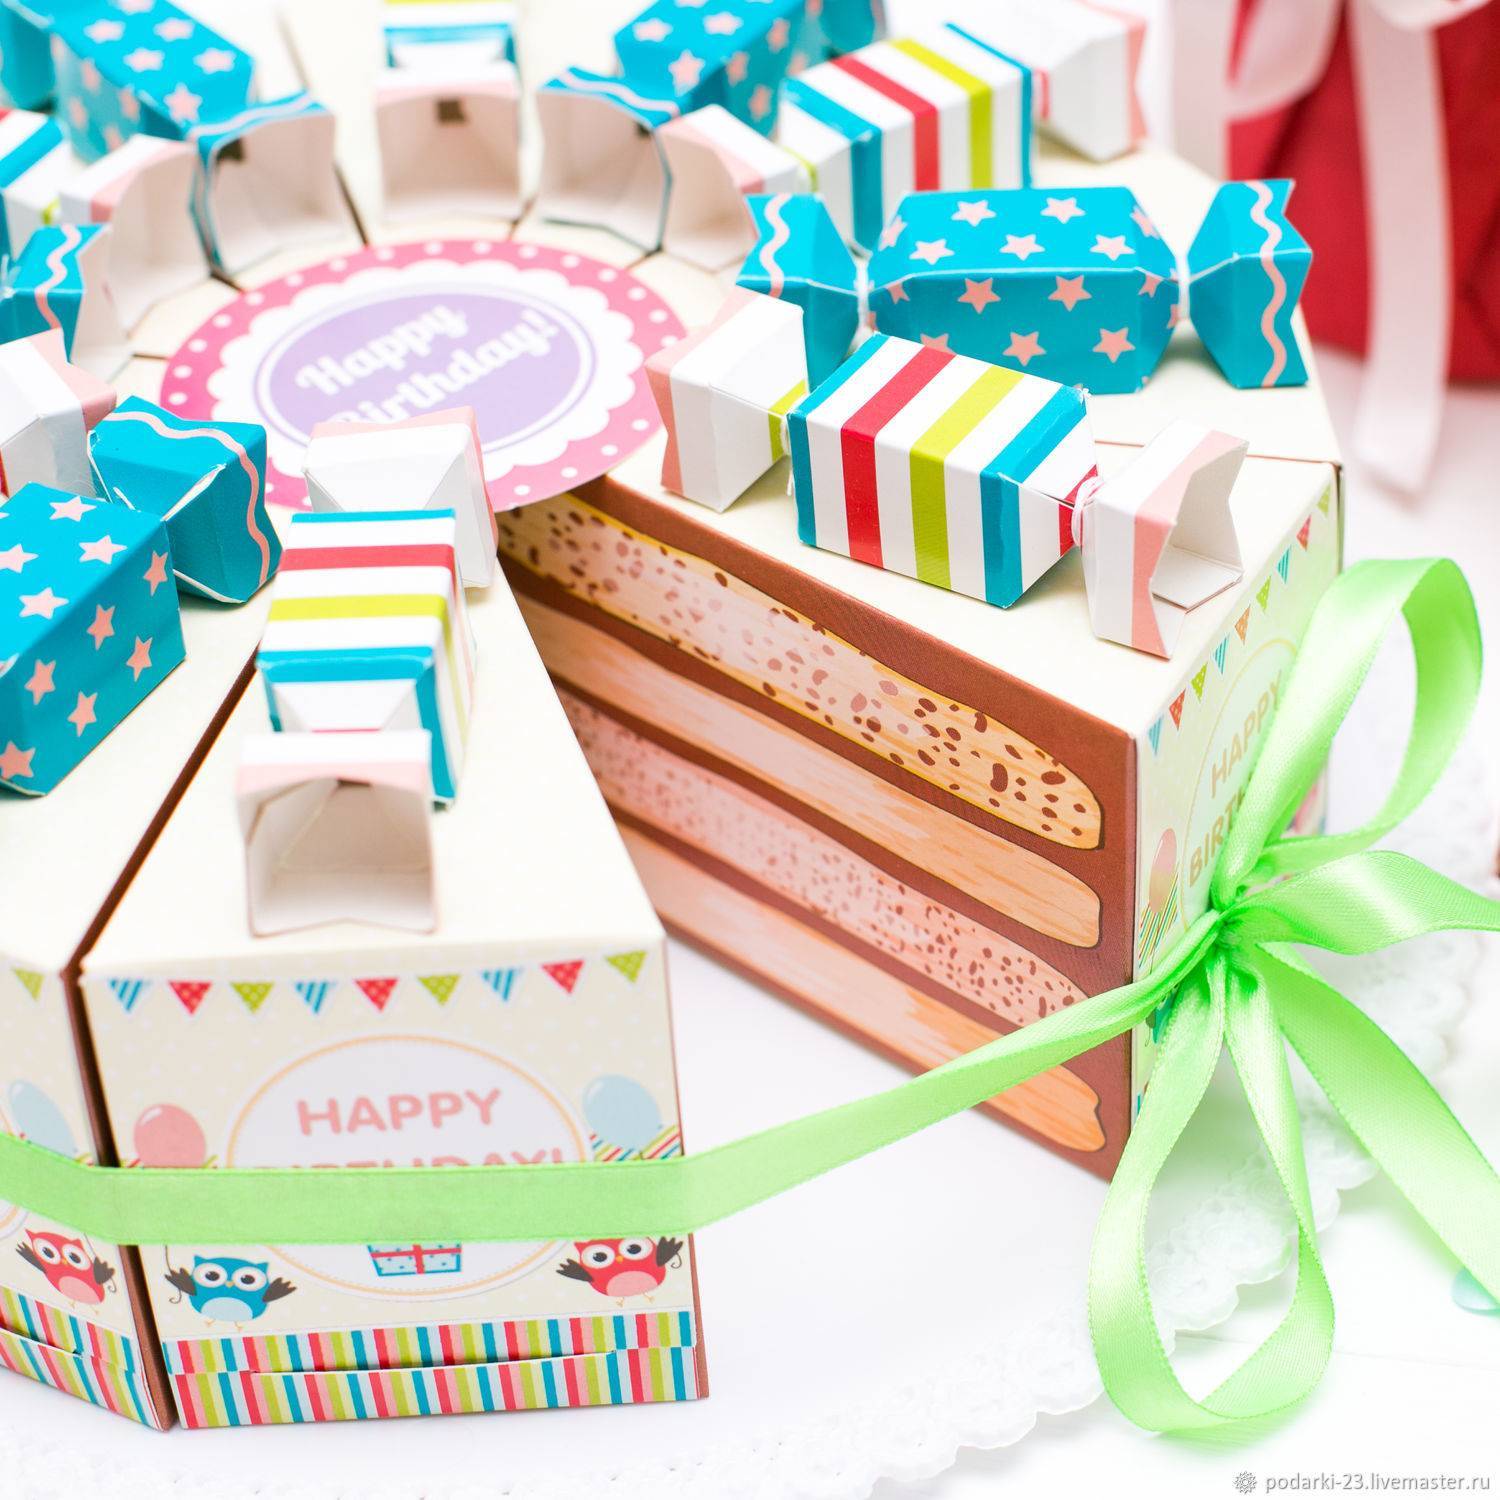 Подарок сюрприз поздравление с днём рождения, 50 идей, любимому, подруге, маме, мужу, жене, ребенку. какие сюрпризы можно преподнести на день рождения. статья о сюрпризах на день рождения для близких и родных